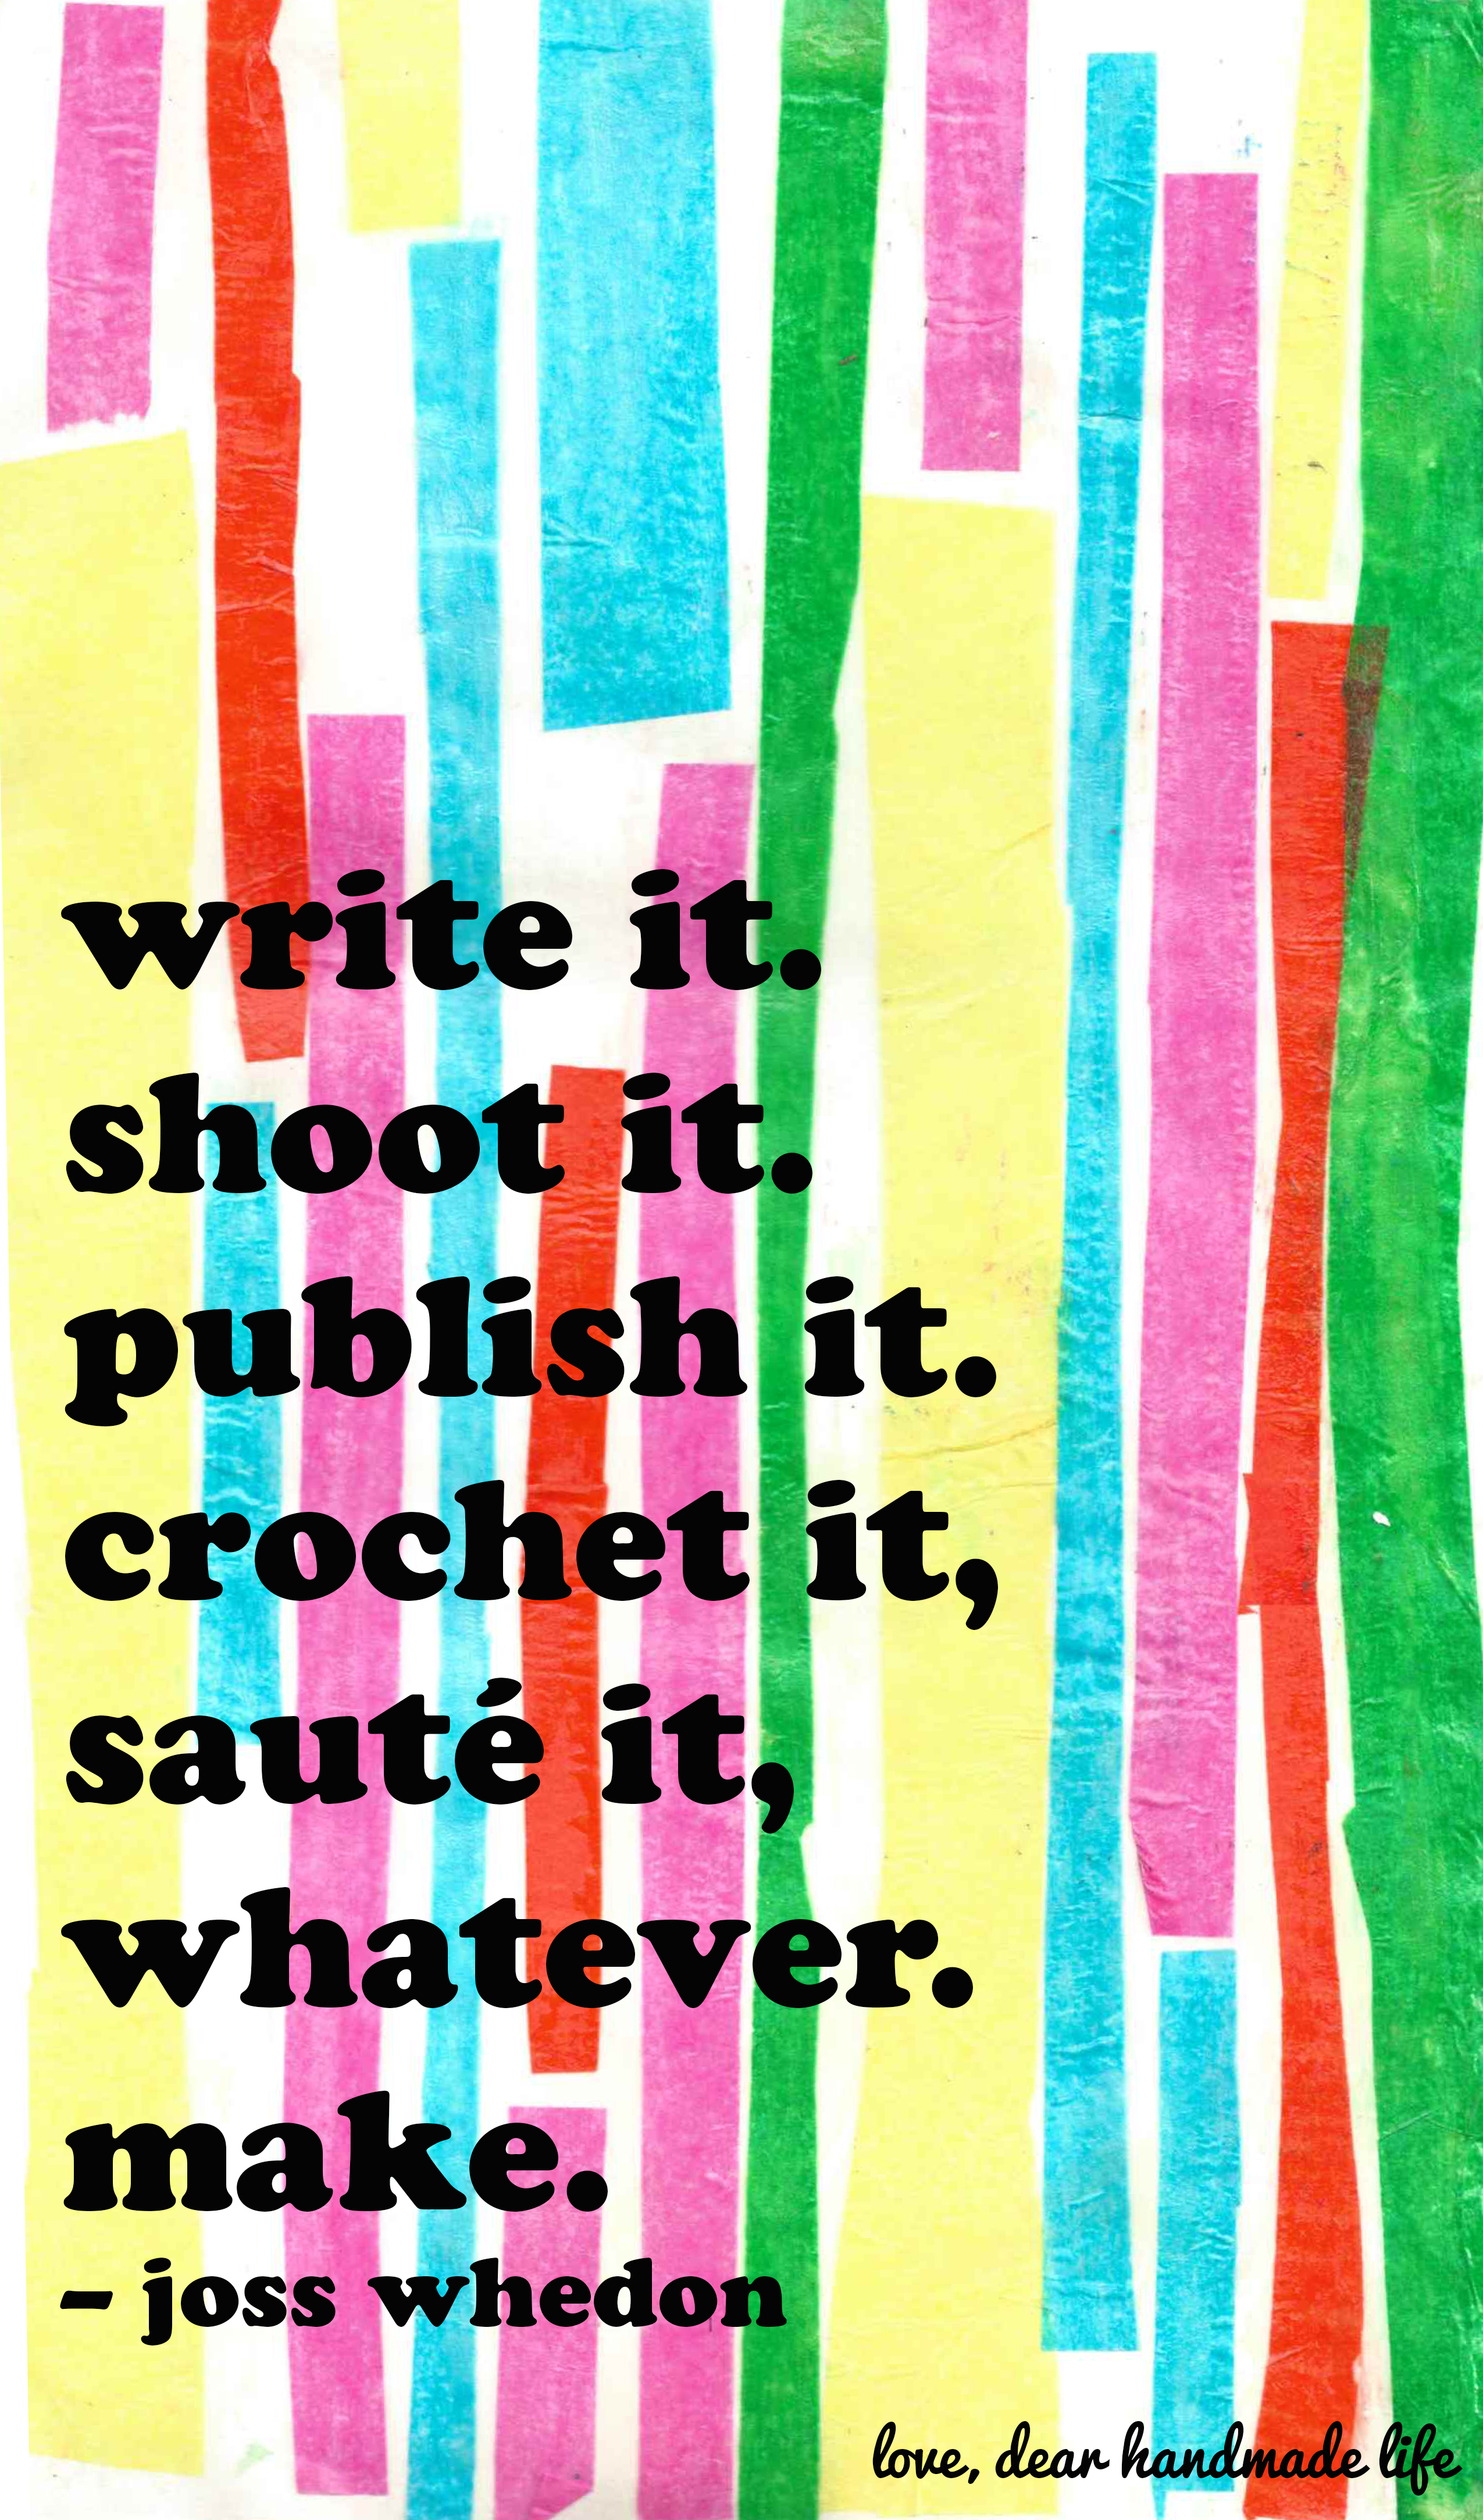 write-it-shoot-it-publish-it-crochet-it-saute-it-whatever-make-joss-whedon-dear-handmade-life